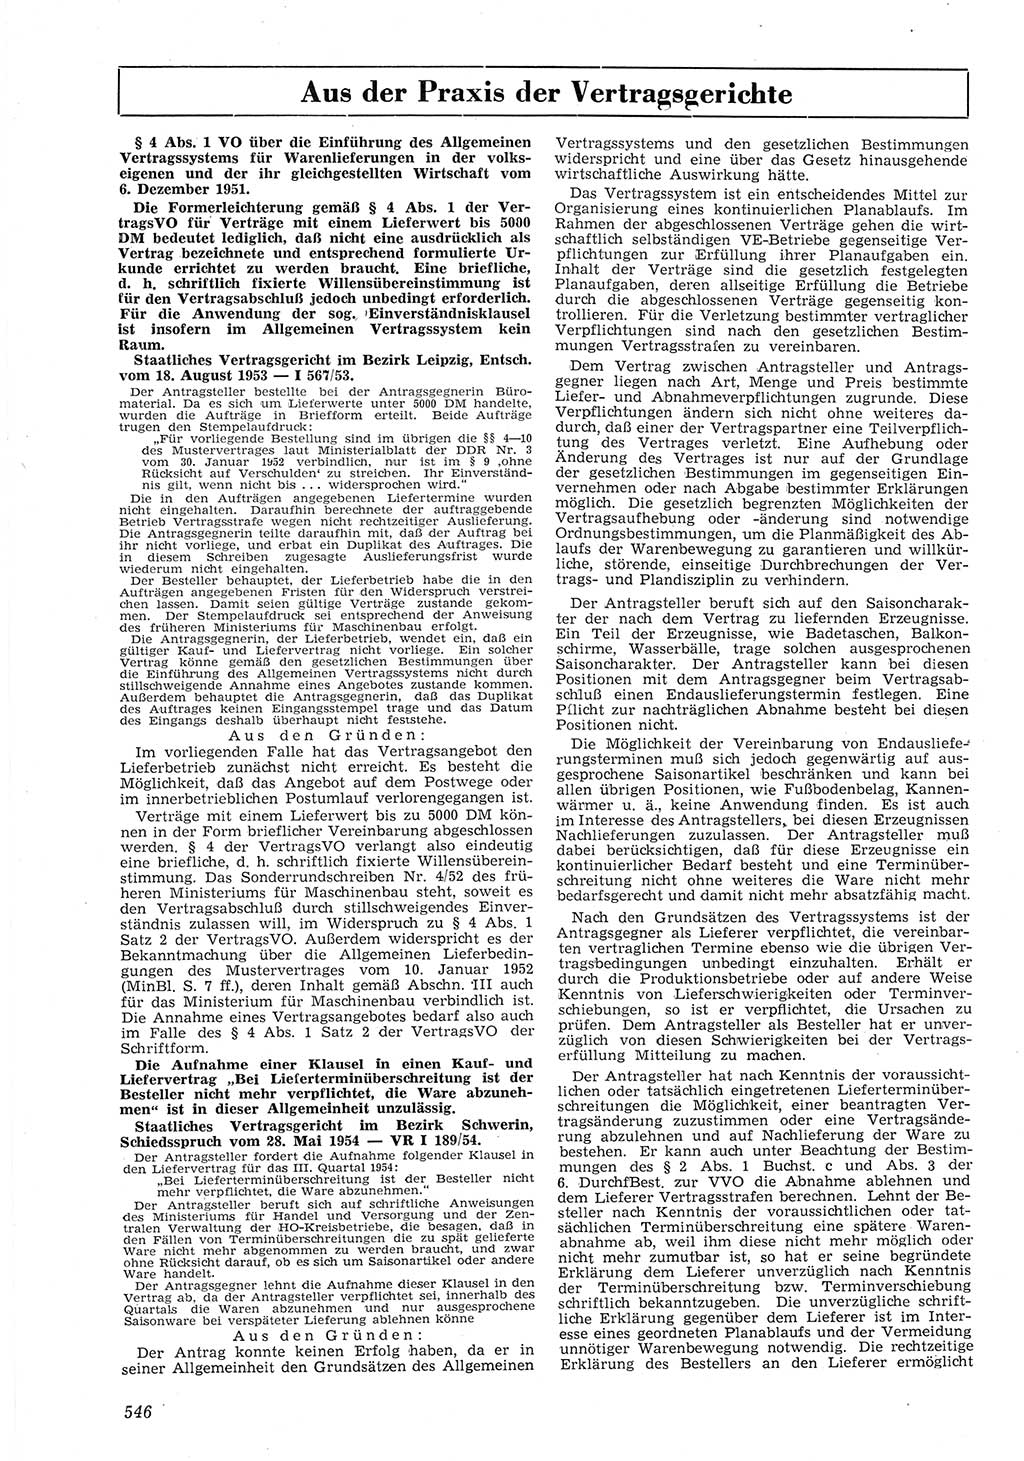 Neue Justiz (NJ), Zeitschrift für Recht und Rechtswissenschaft [Deutsche Demokratische Republik (DDR)], 8. Jahrgang 1954, Seite 546 (NJ DDR 1954, S. 546)